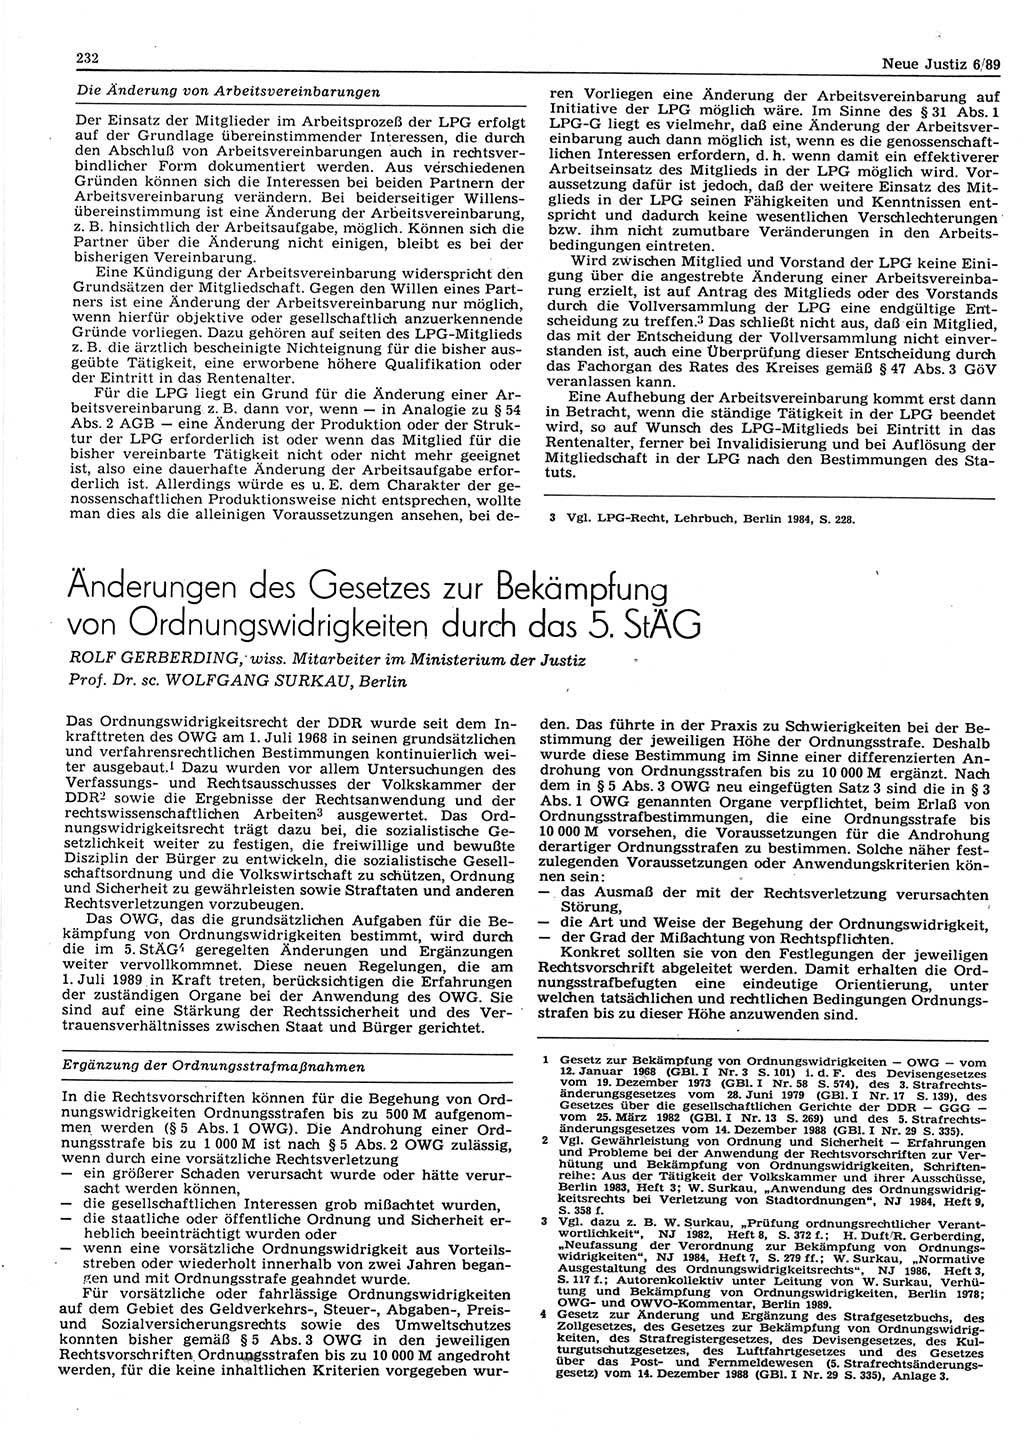 Neue Justiz (NJ), Zeitschrift für sozialistisches Recht und Gesetzlichkeit [Deutsche Demokratische Republik (DDR)], 43. Jahrgang 1989, Seite 232 (NJ DDR 1989, S. 232)